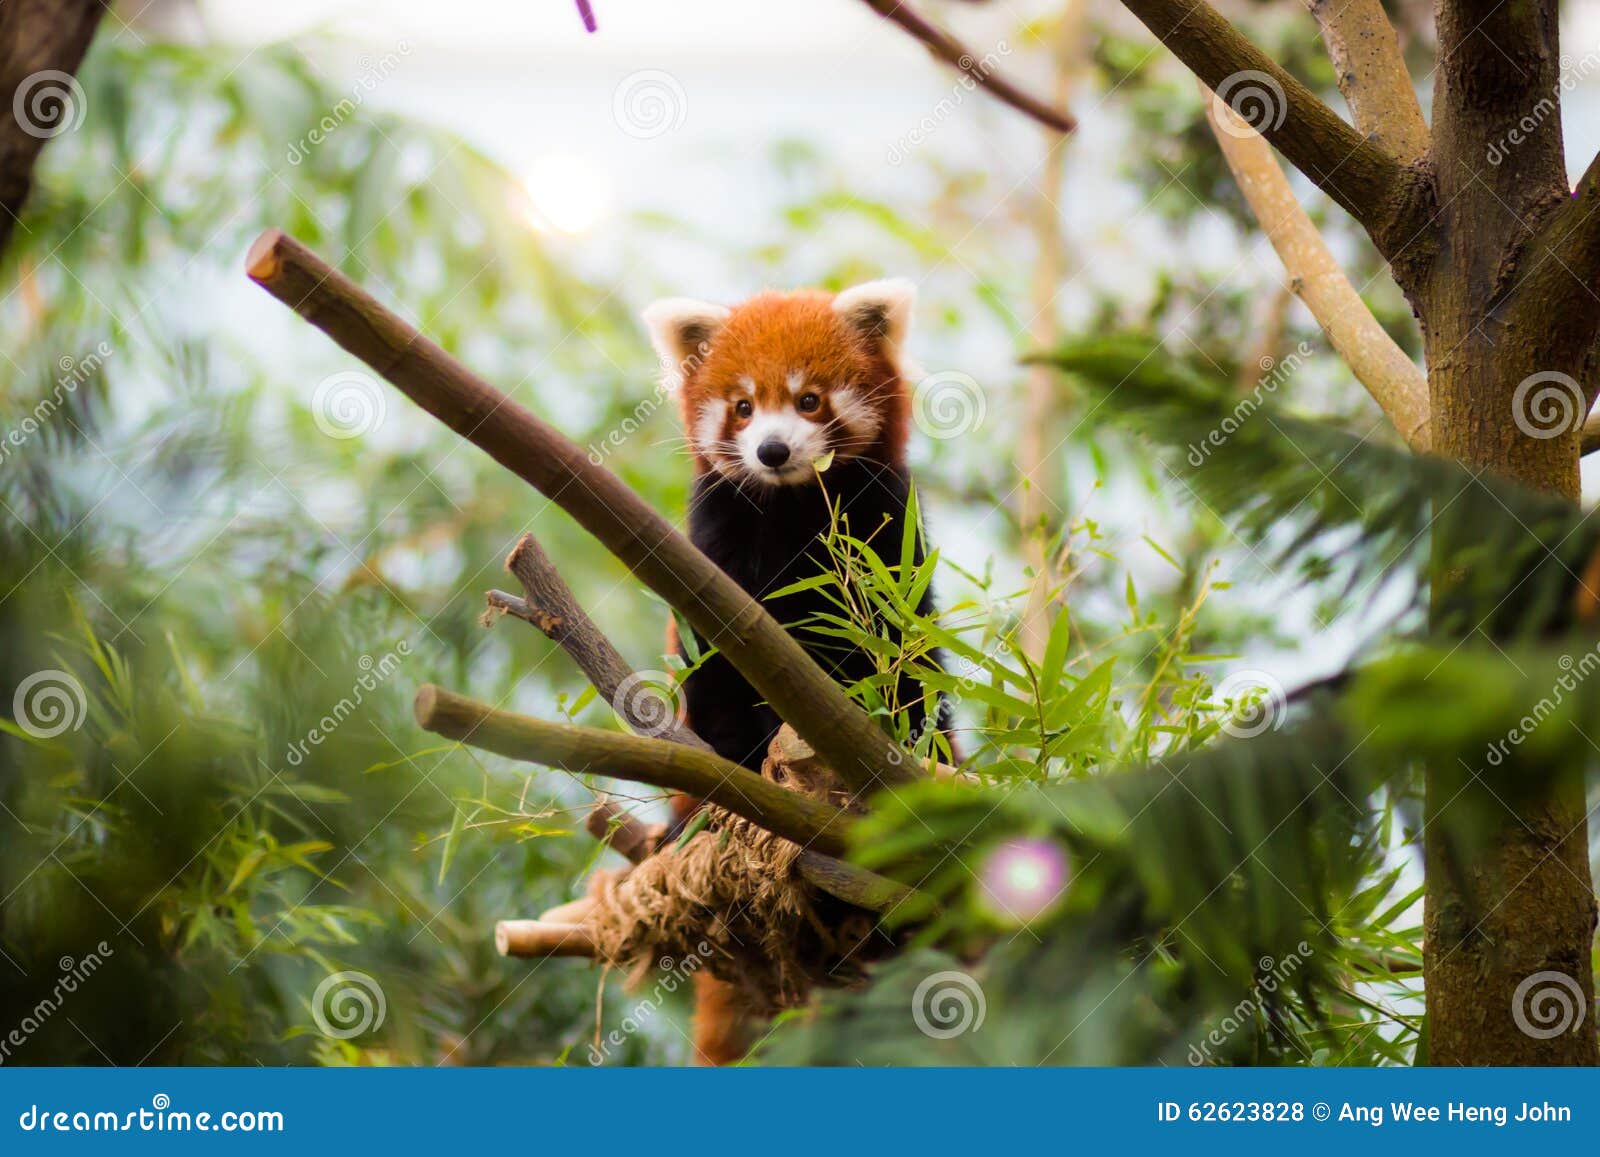 Red Panda in zoo enclosure